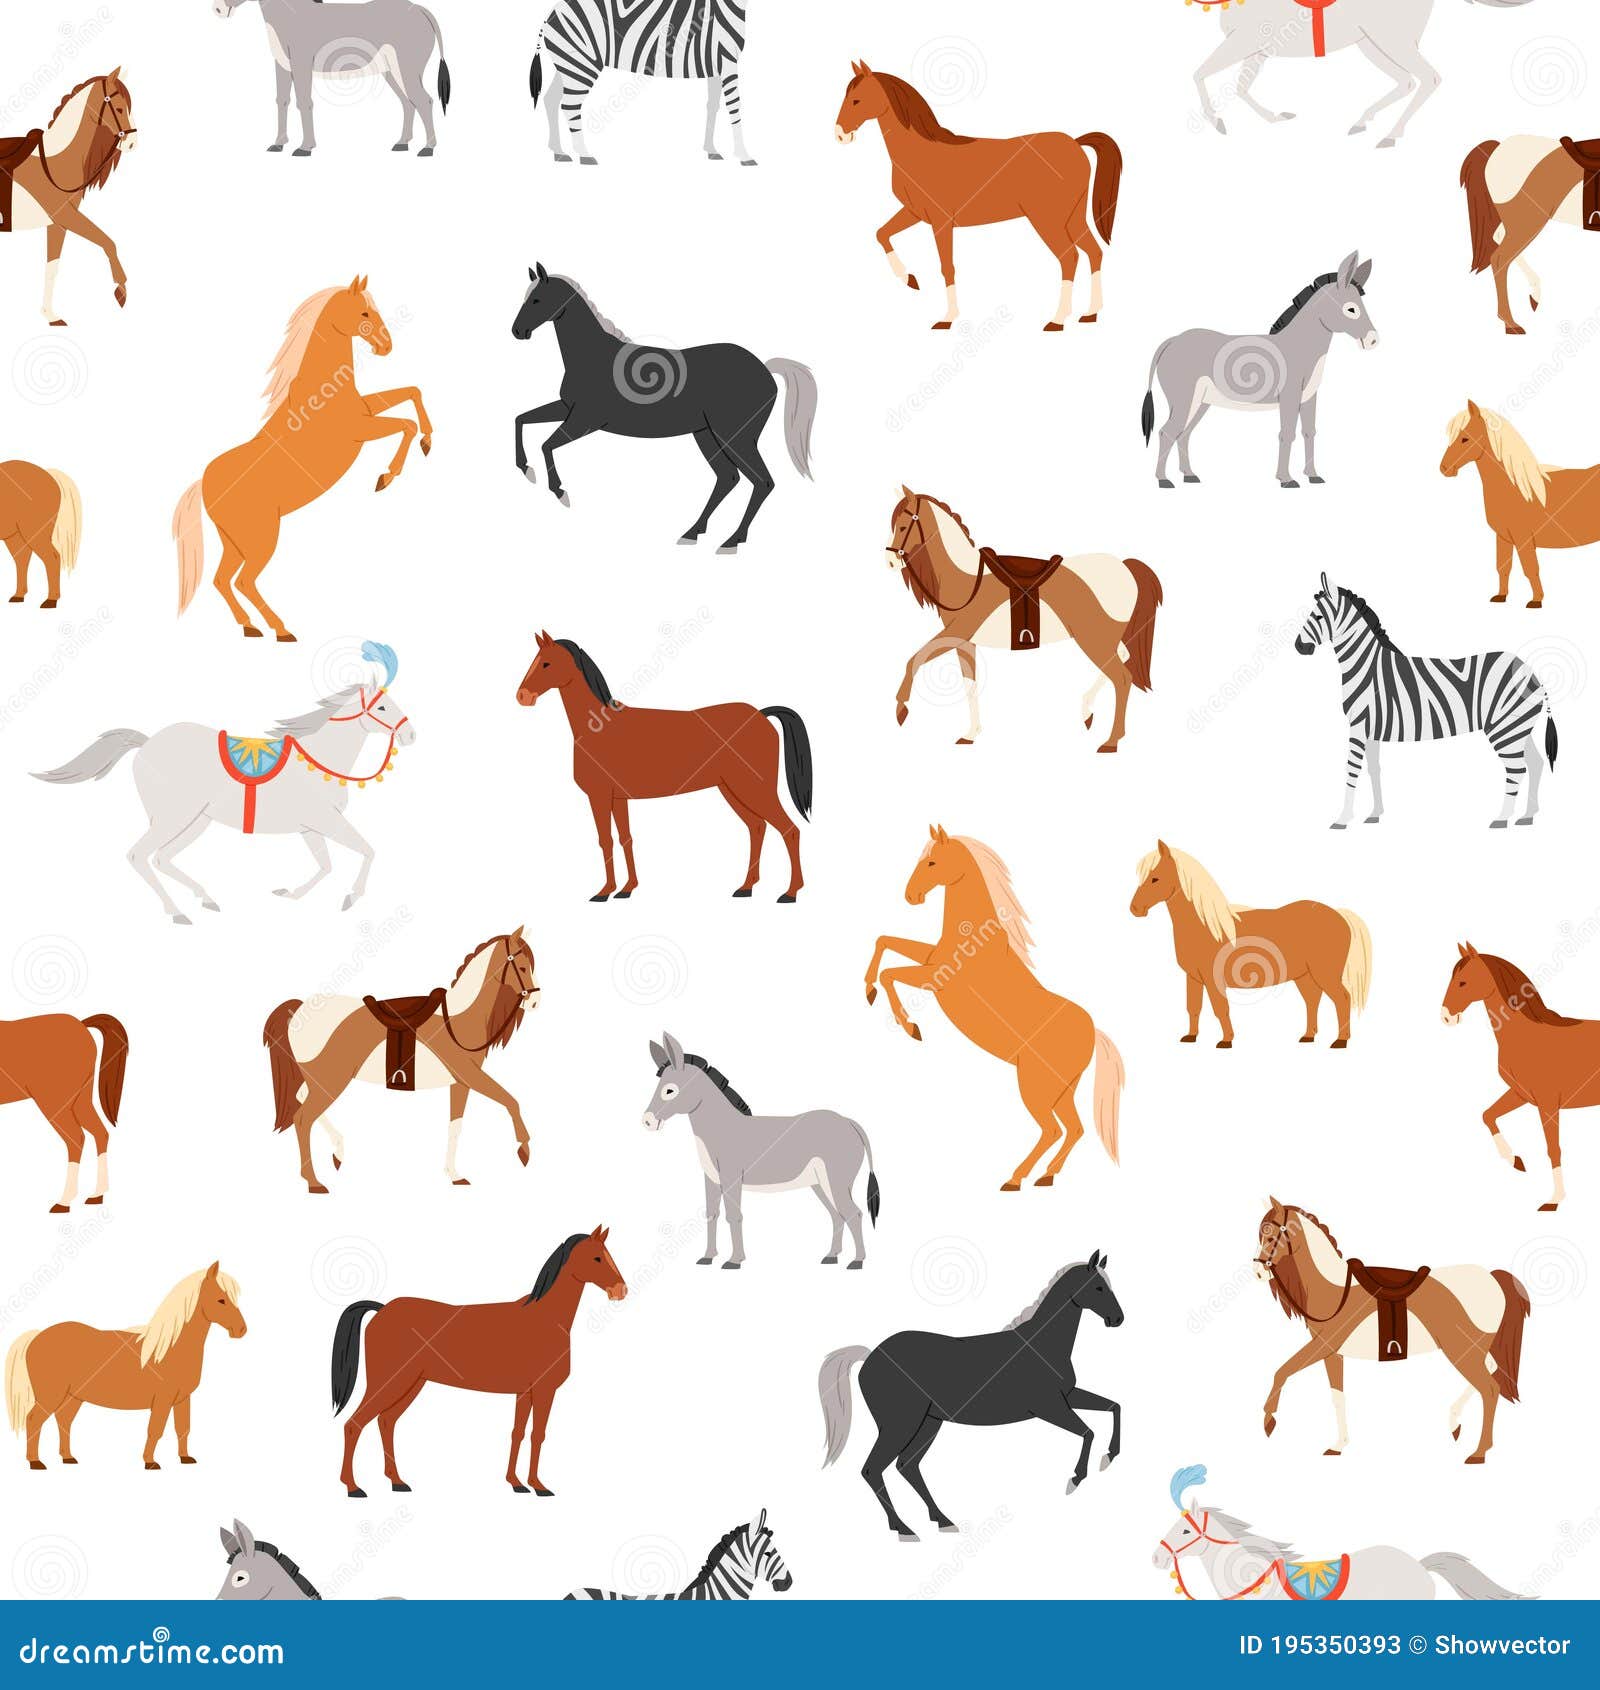 horses seamless pattern  , cartoon flat herbivorous ungulates includes horse, pony, zebra donkey